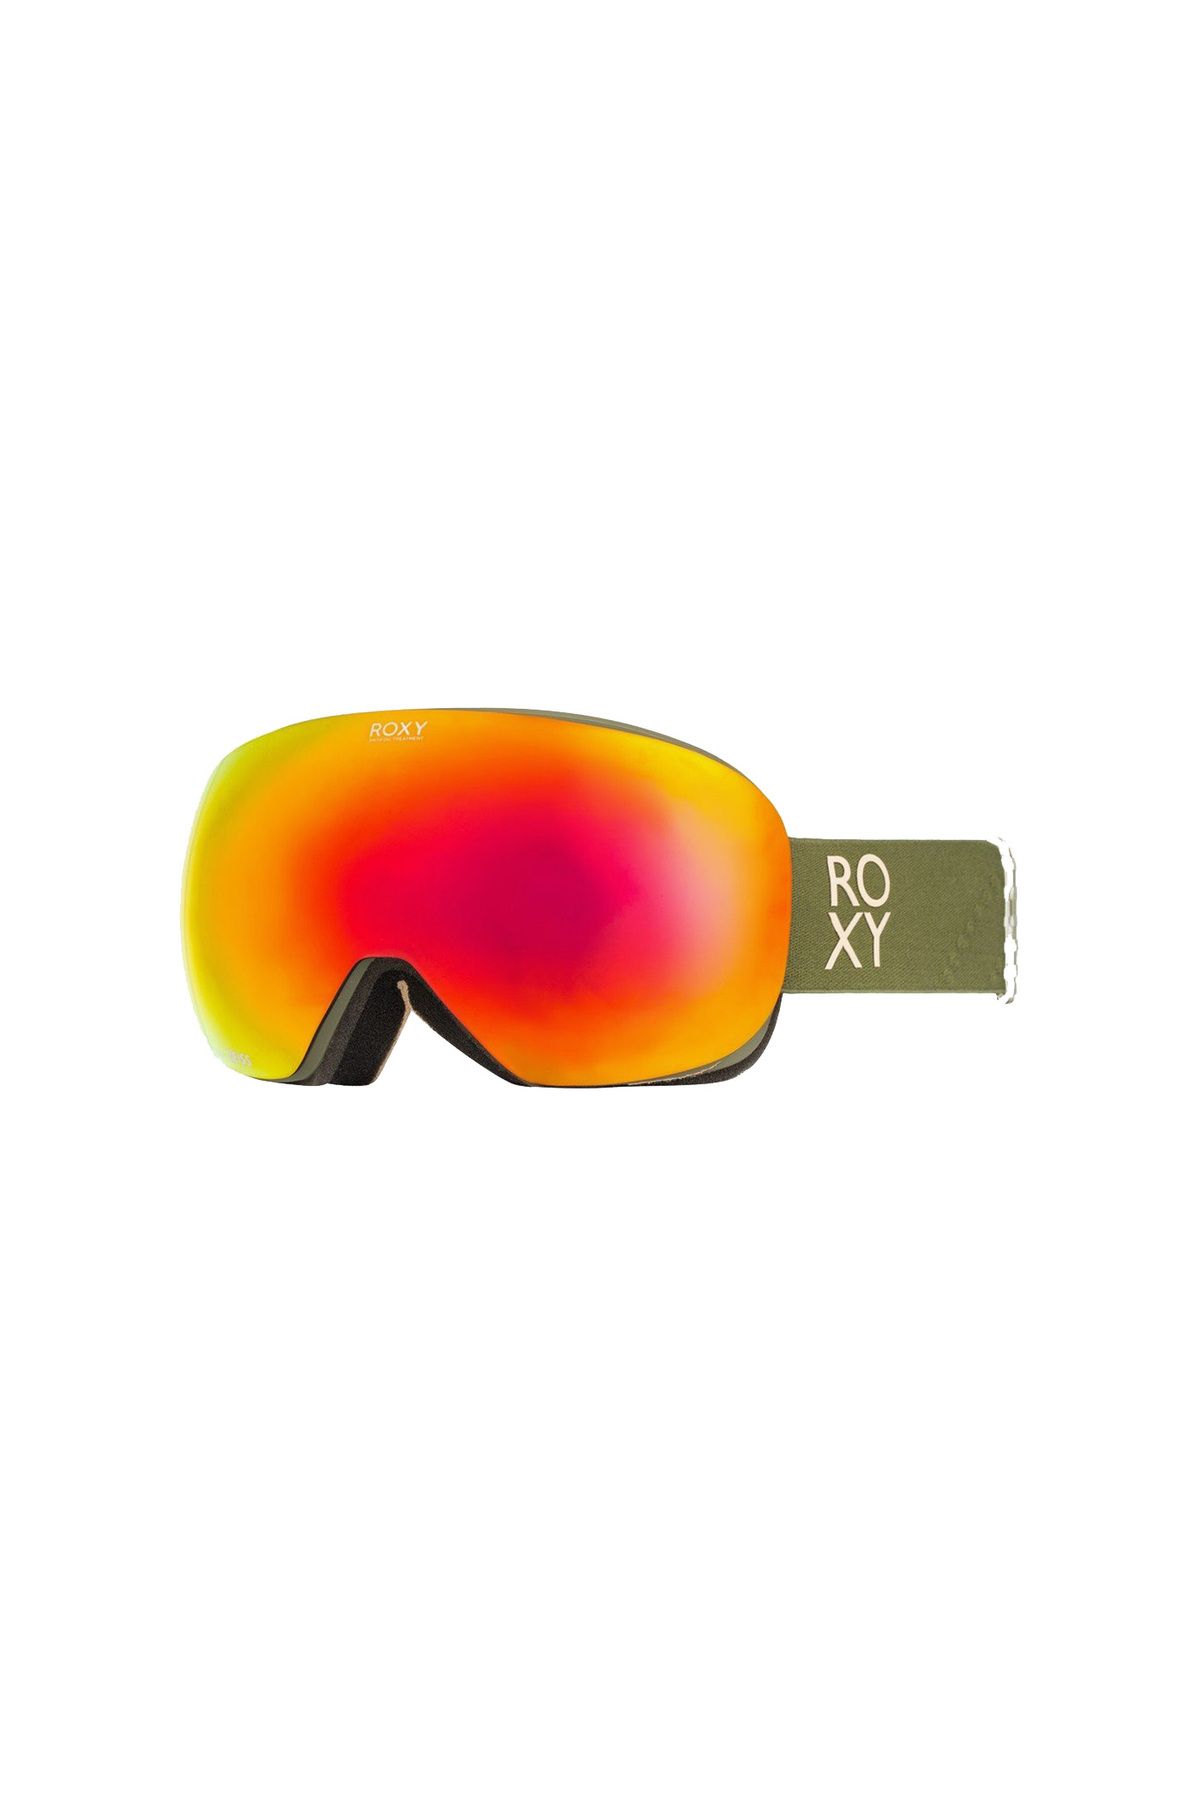 Roxy Popscreen Kadın Kayak / Snowboard Goggle